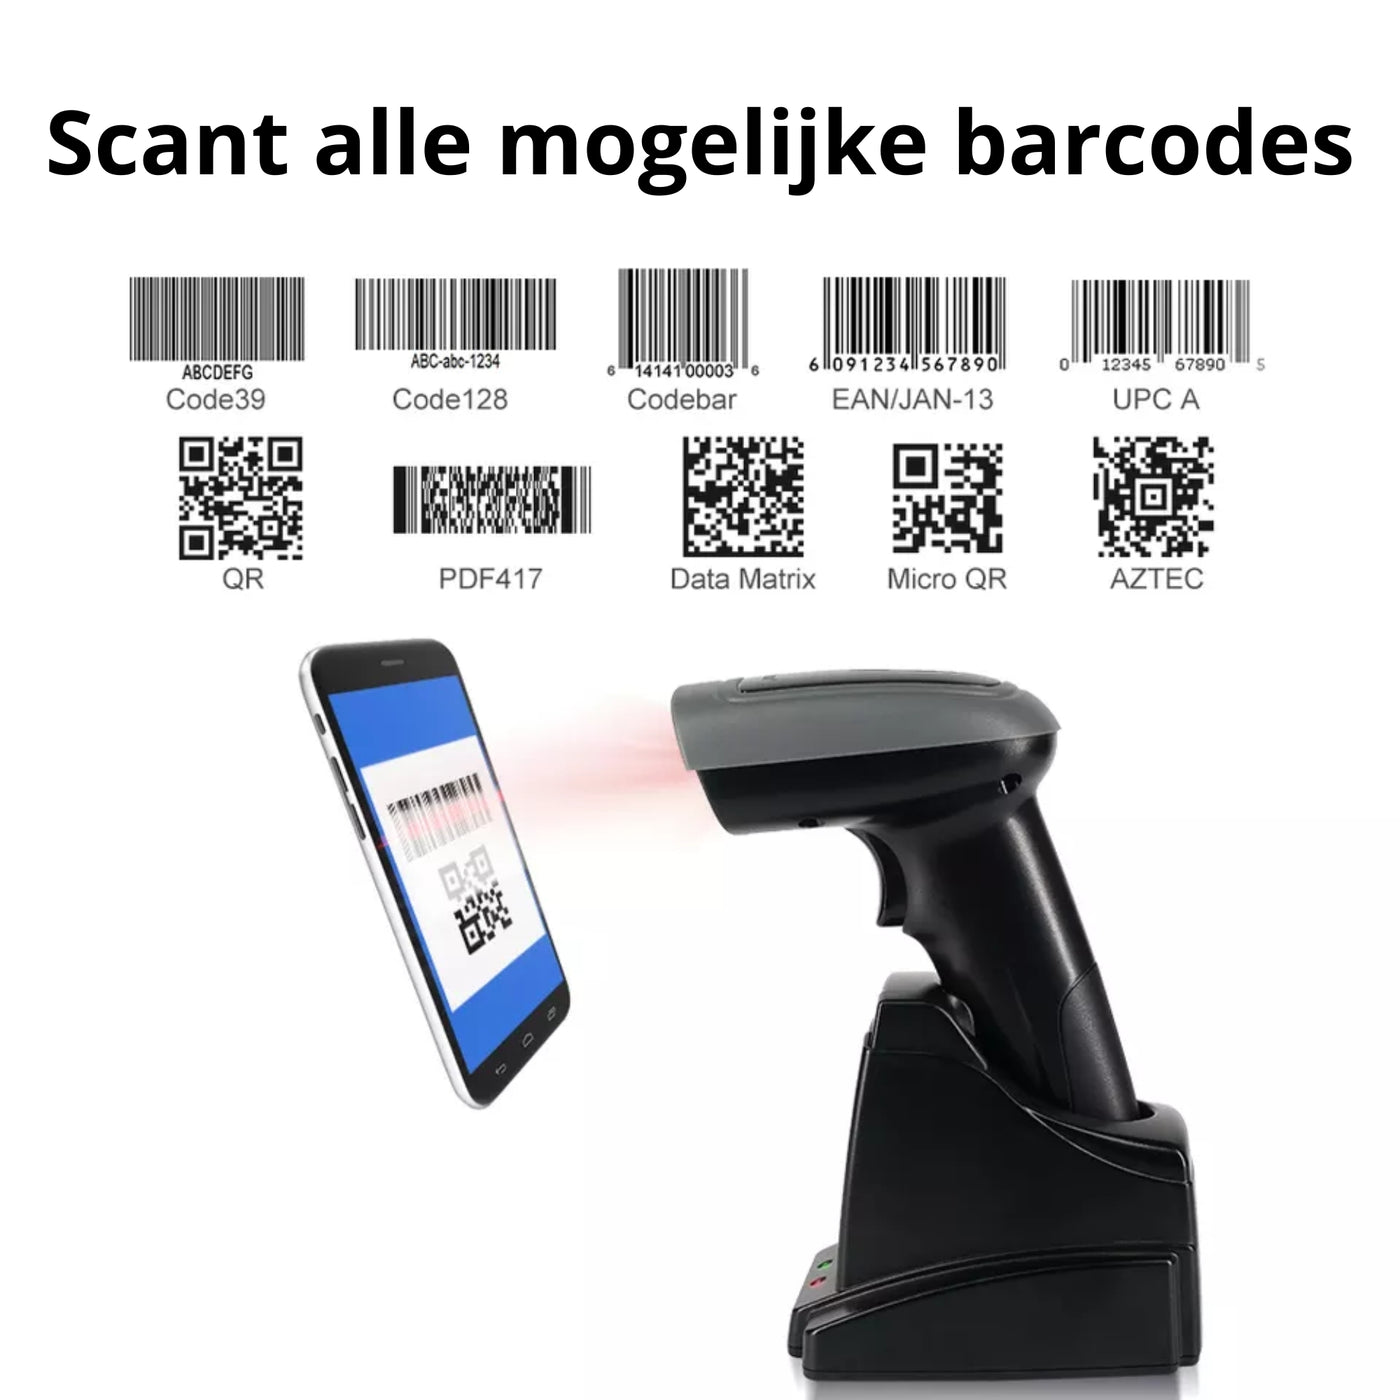 Detepo Barcode Scanner met Slim Laadstation - Draadloos met Bluetooth of met USB aansluiting - Handscanner met Houder voor 1D Barcodes & 2D QR Codes